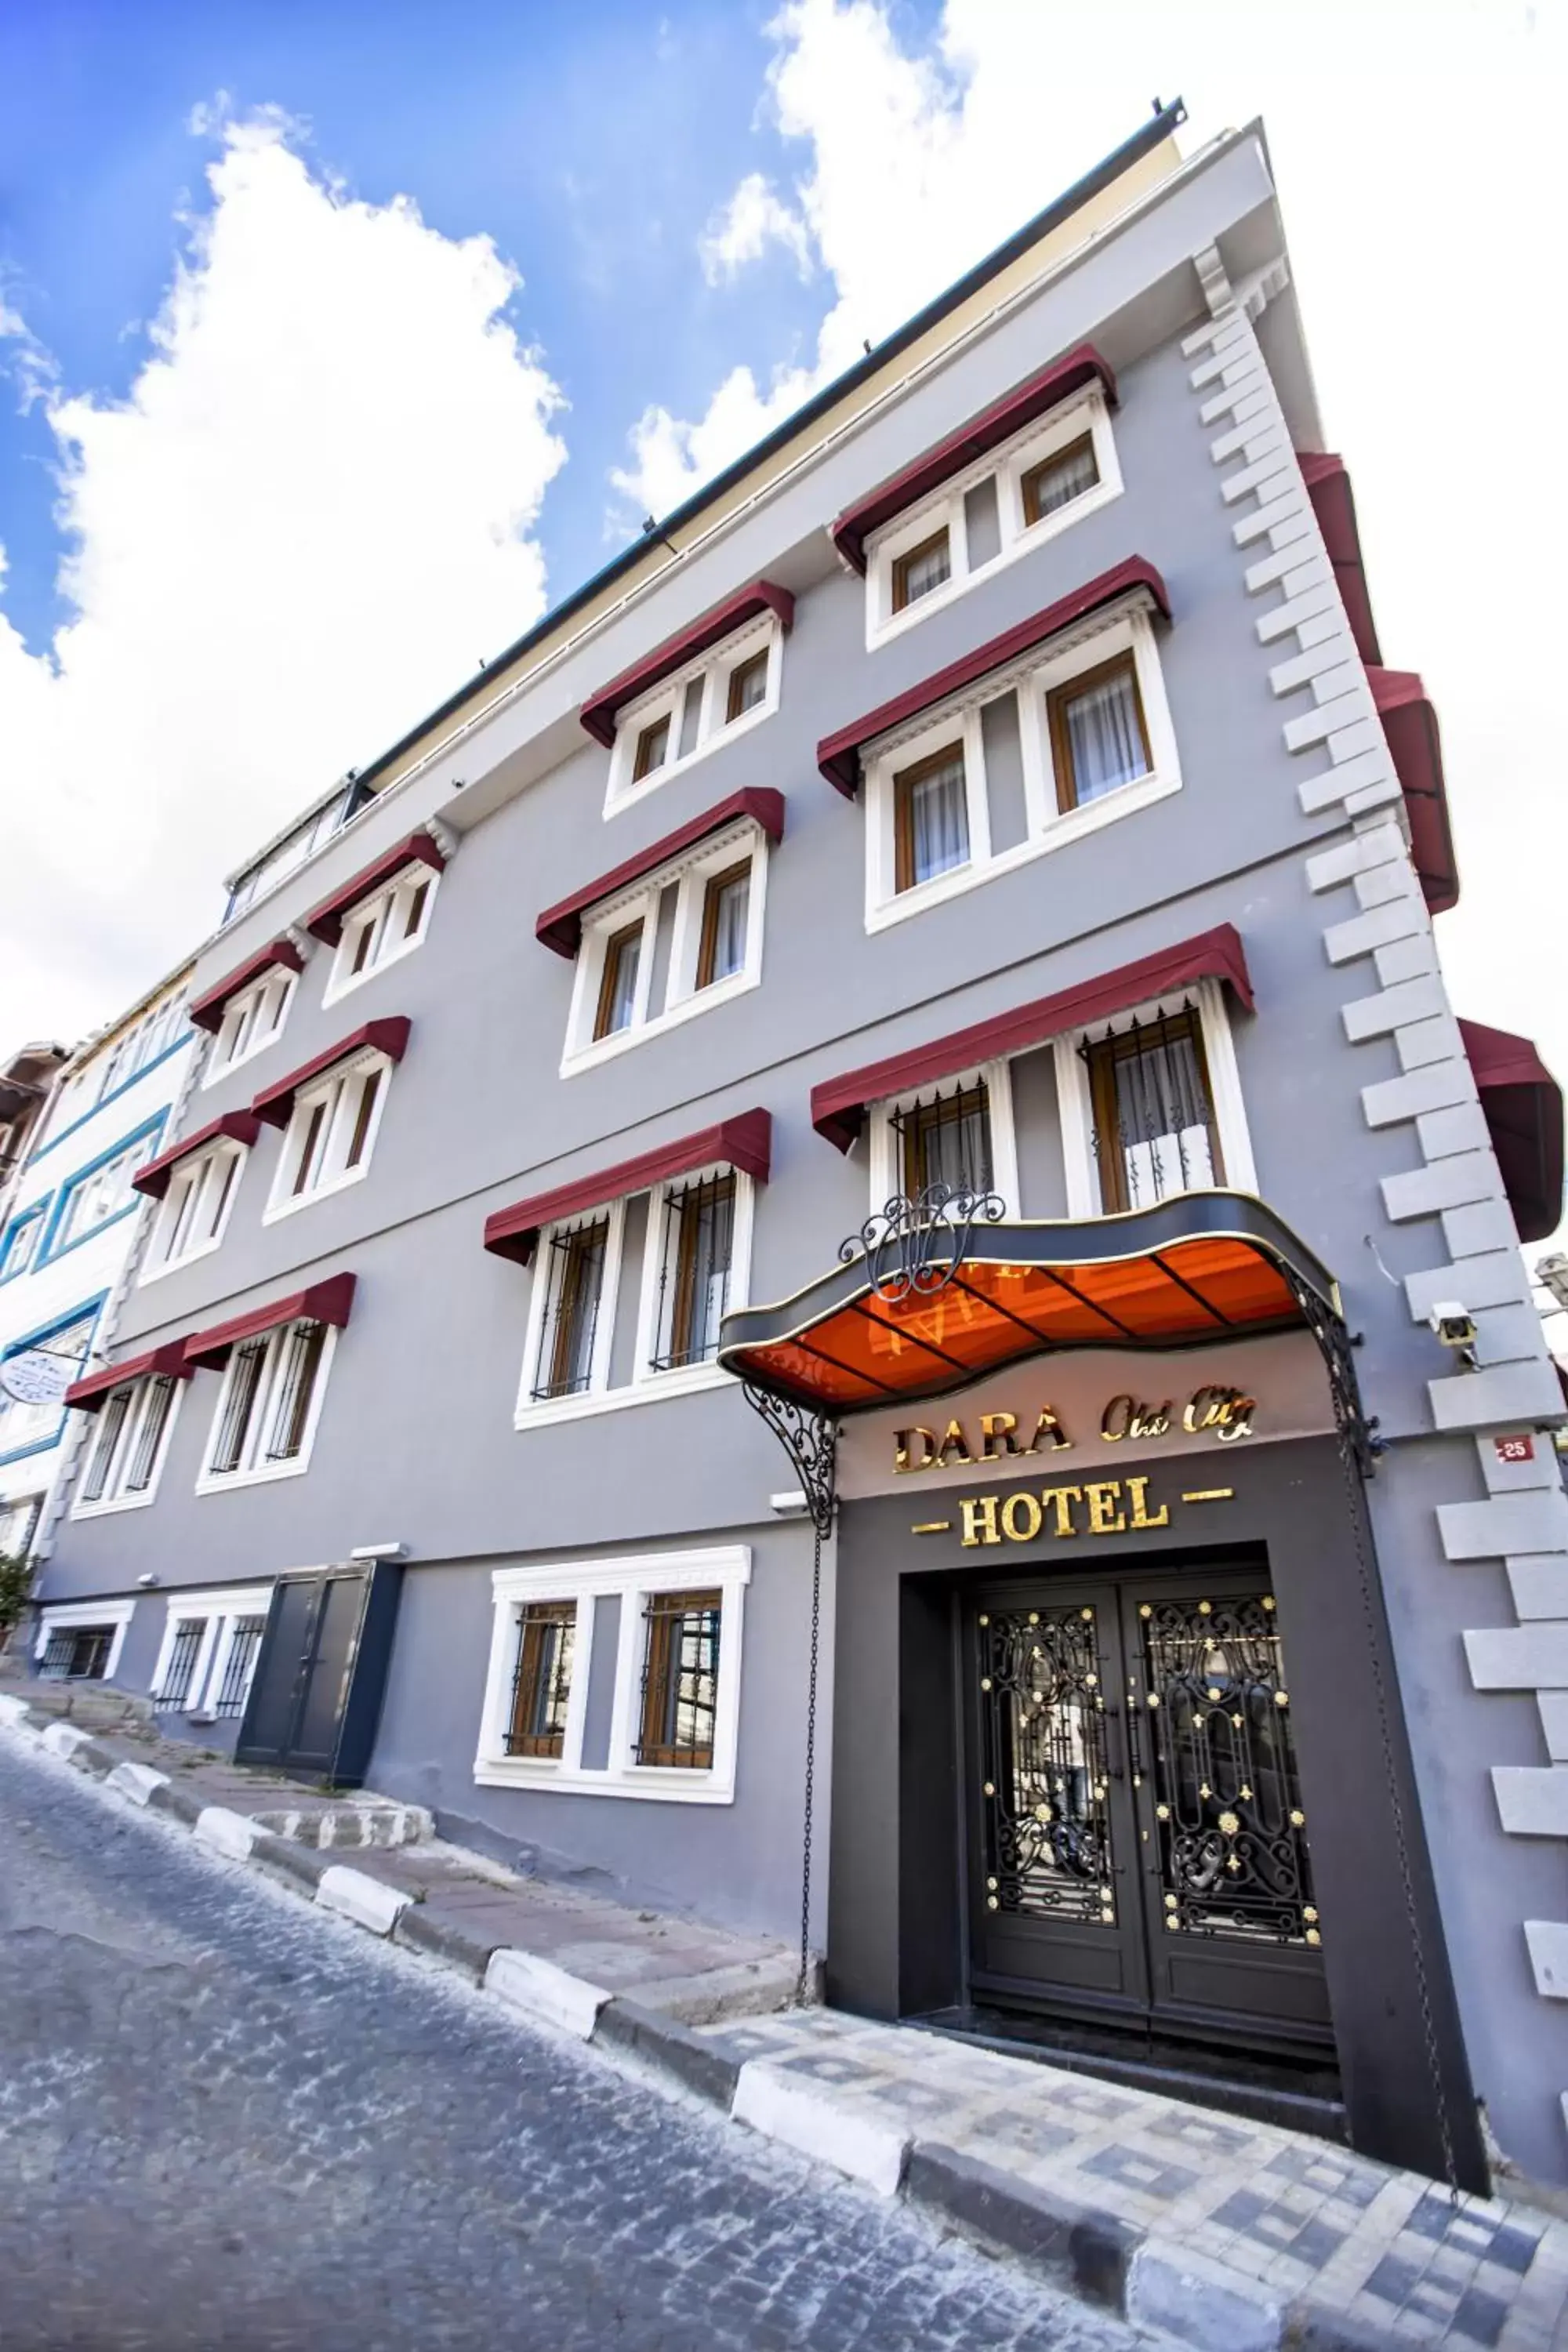 Facade/entrance, Property Building in Dara Old City Hotel